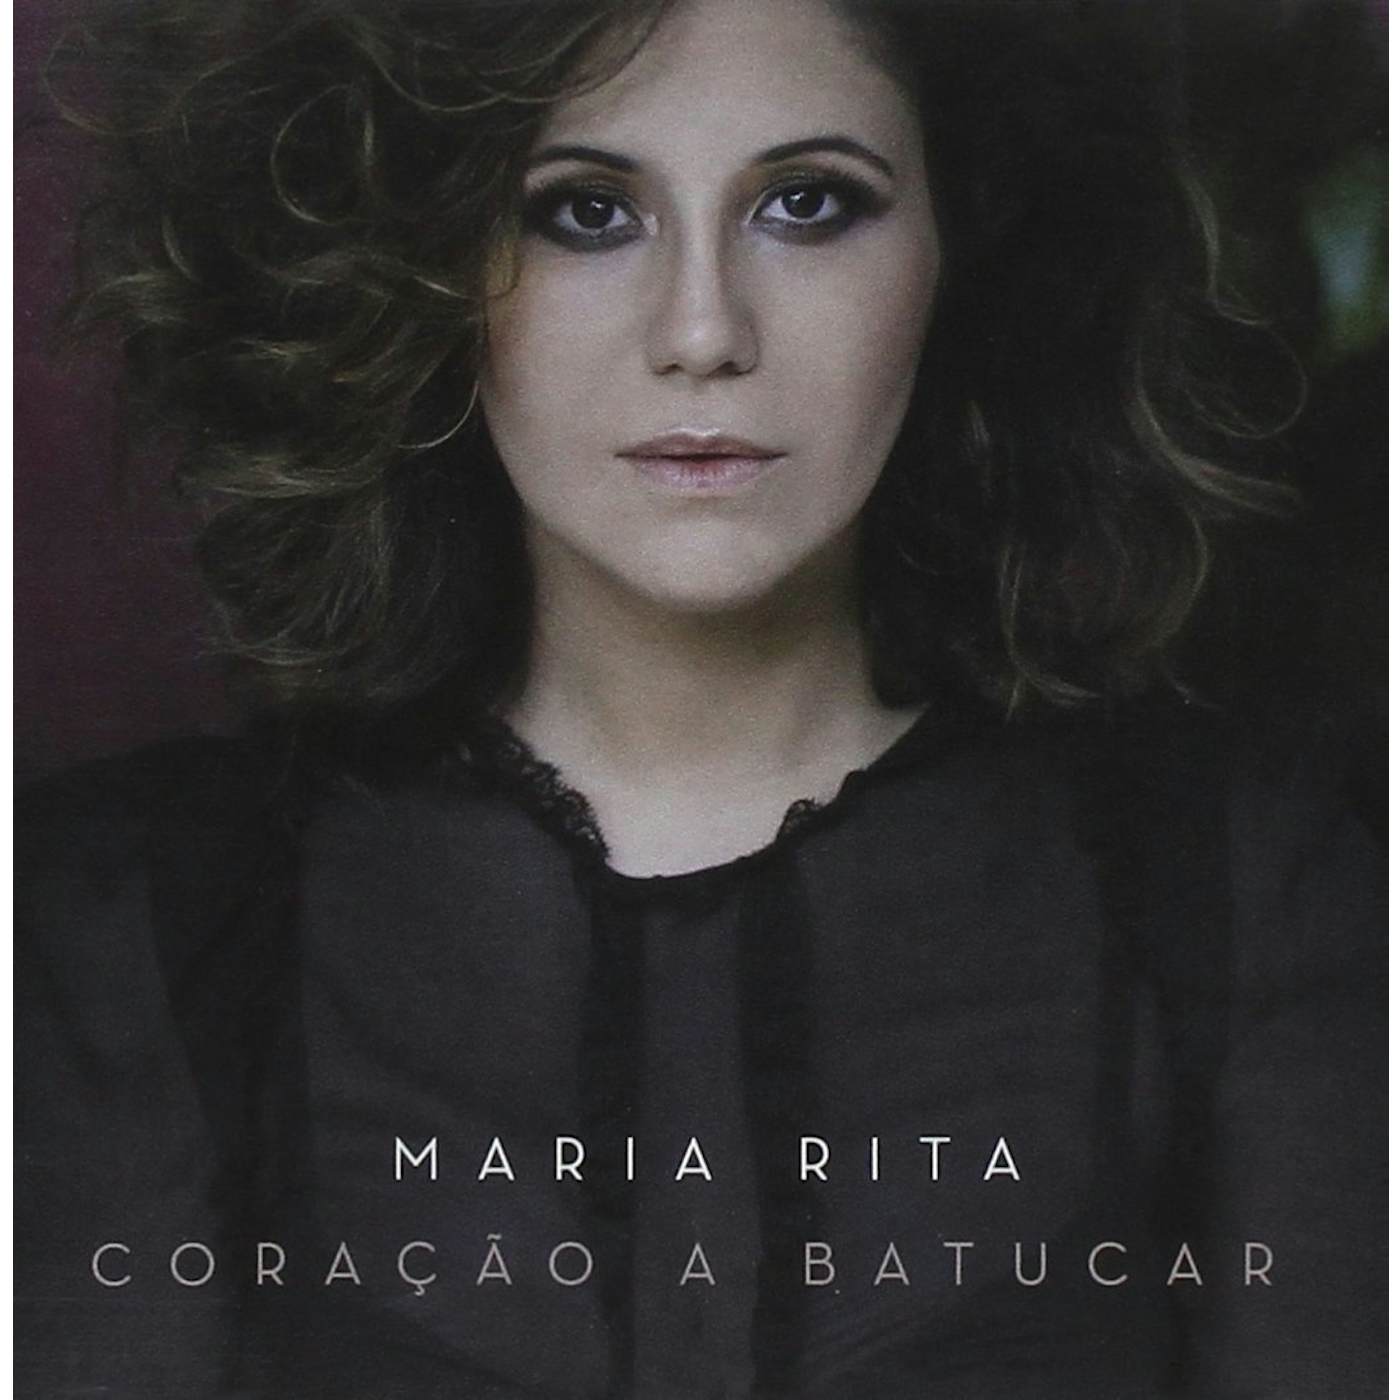 Maria Rita CORACAO A BATUCAR CD